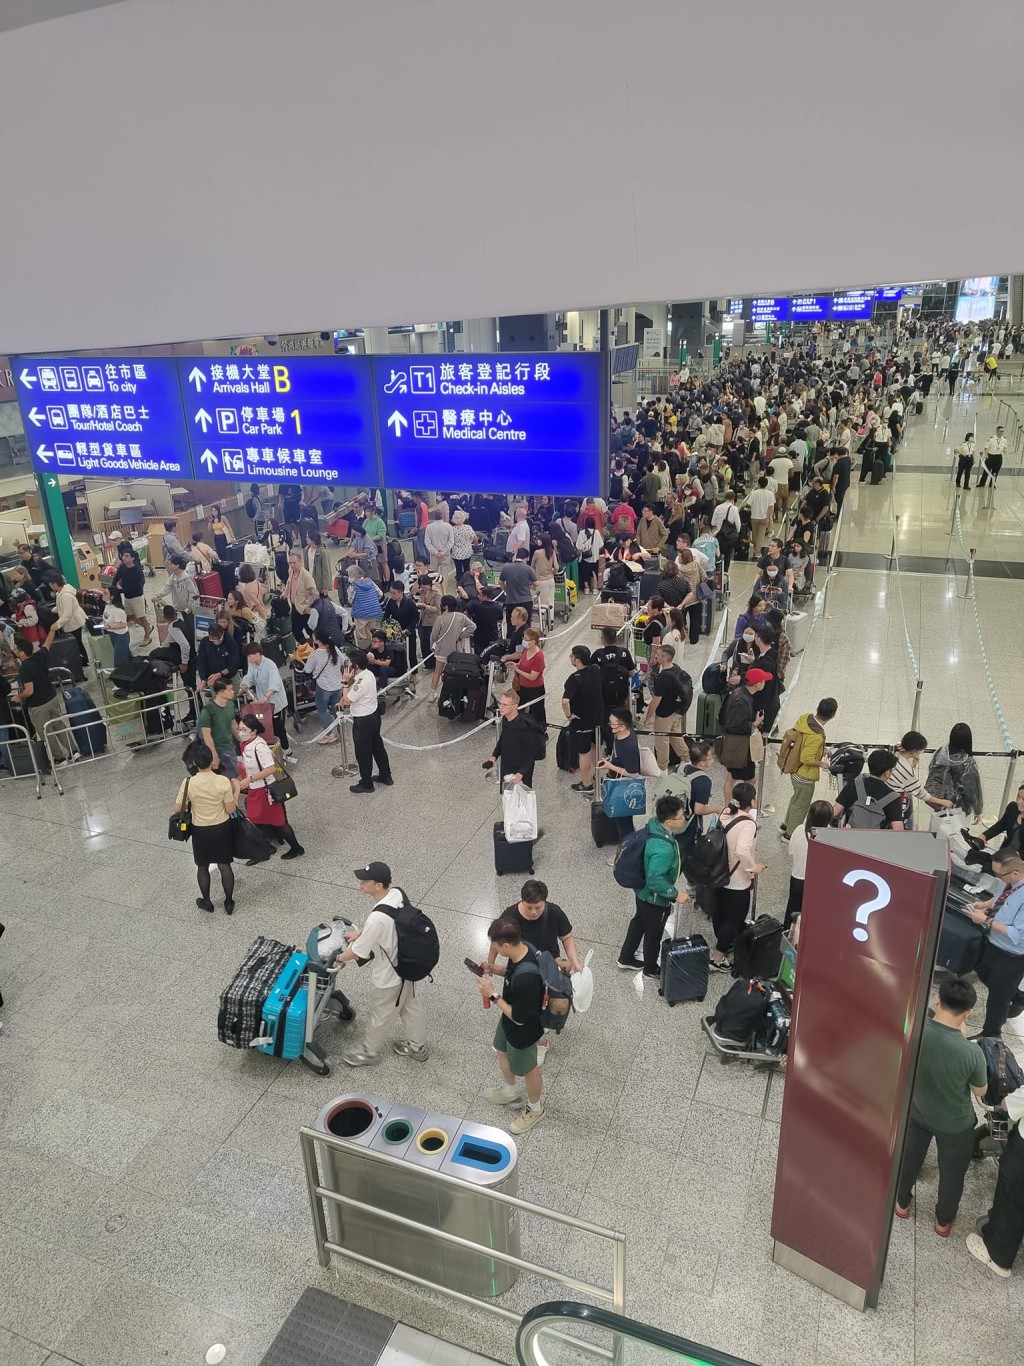 当日机场有逾万人排队等候的士。香港机场实况讨论区